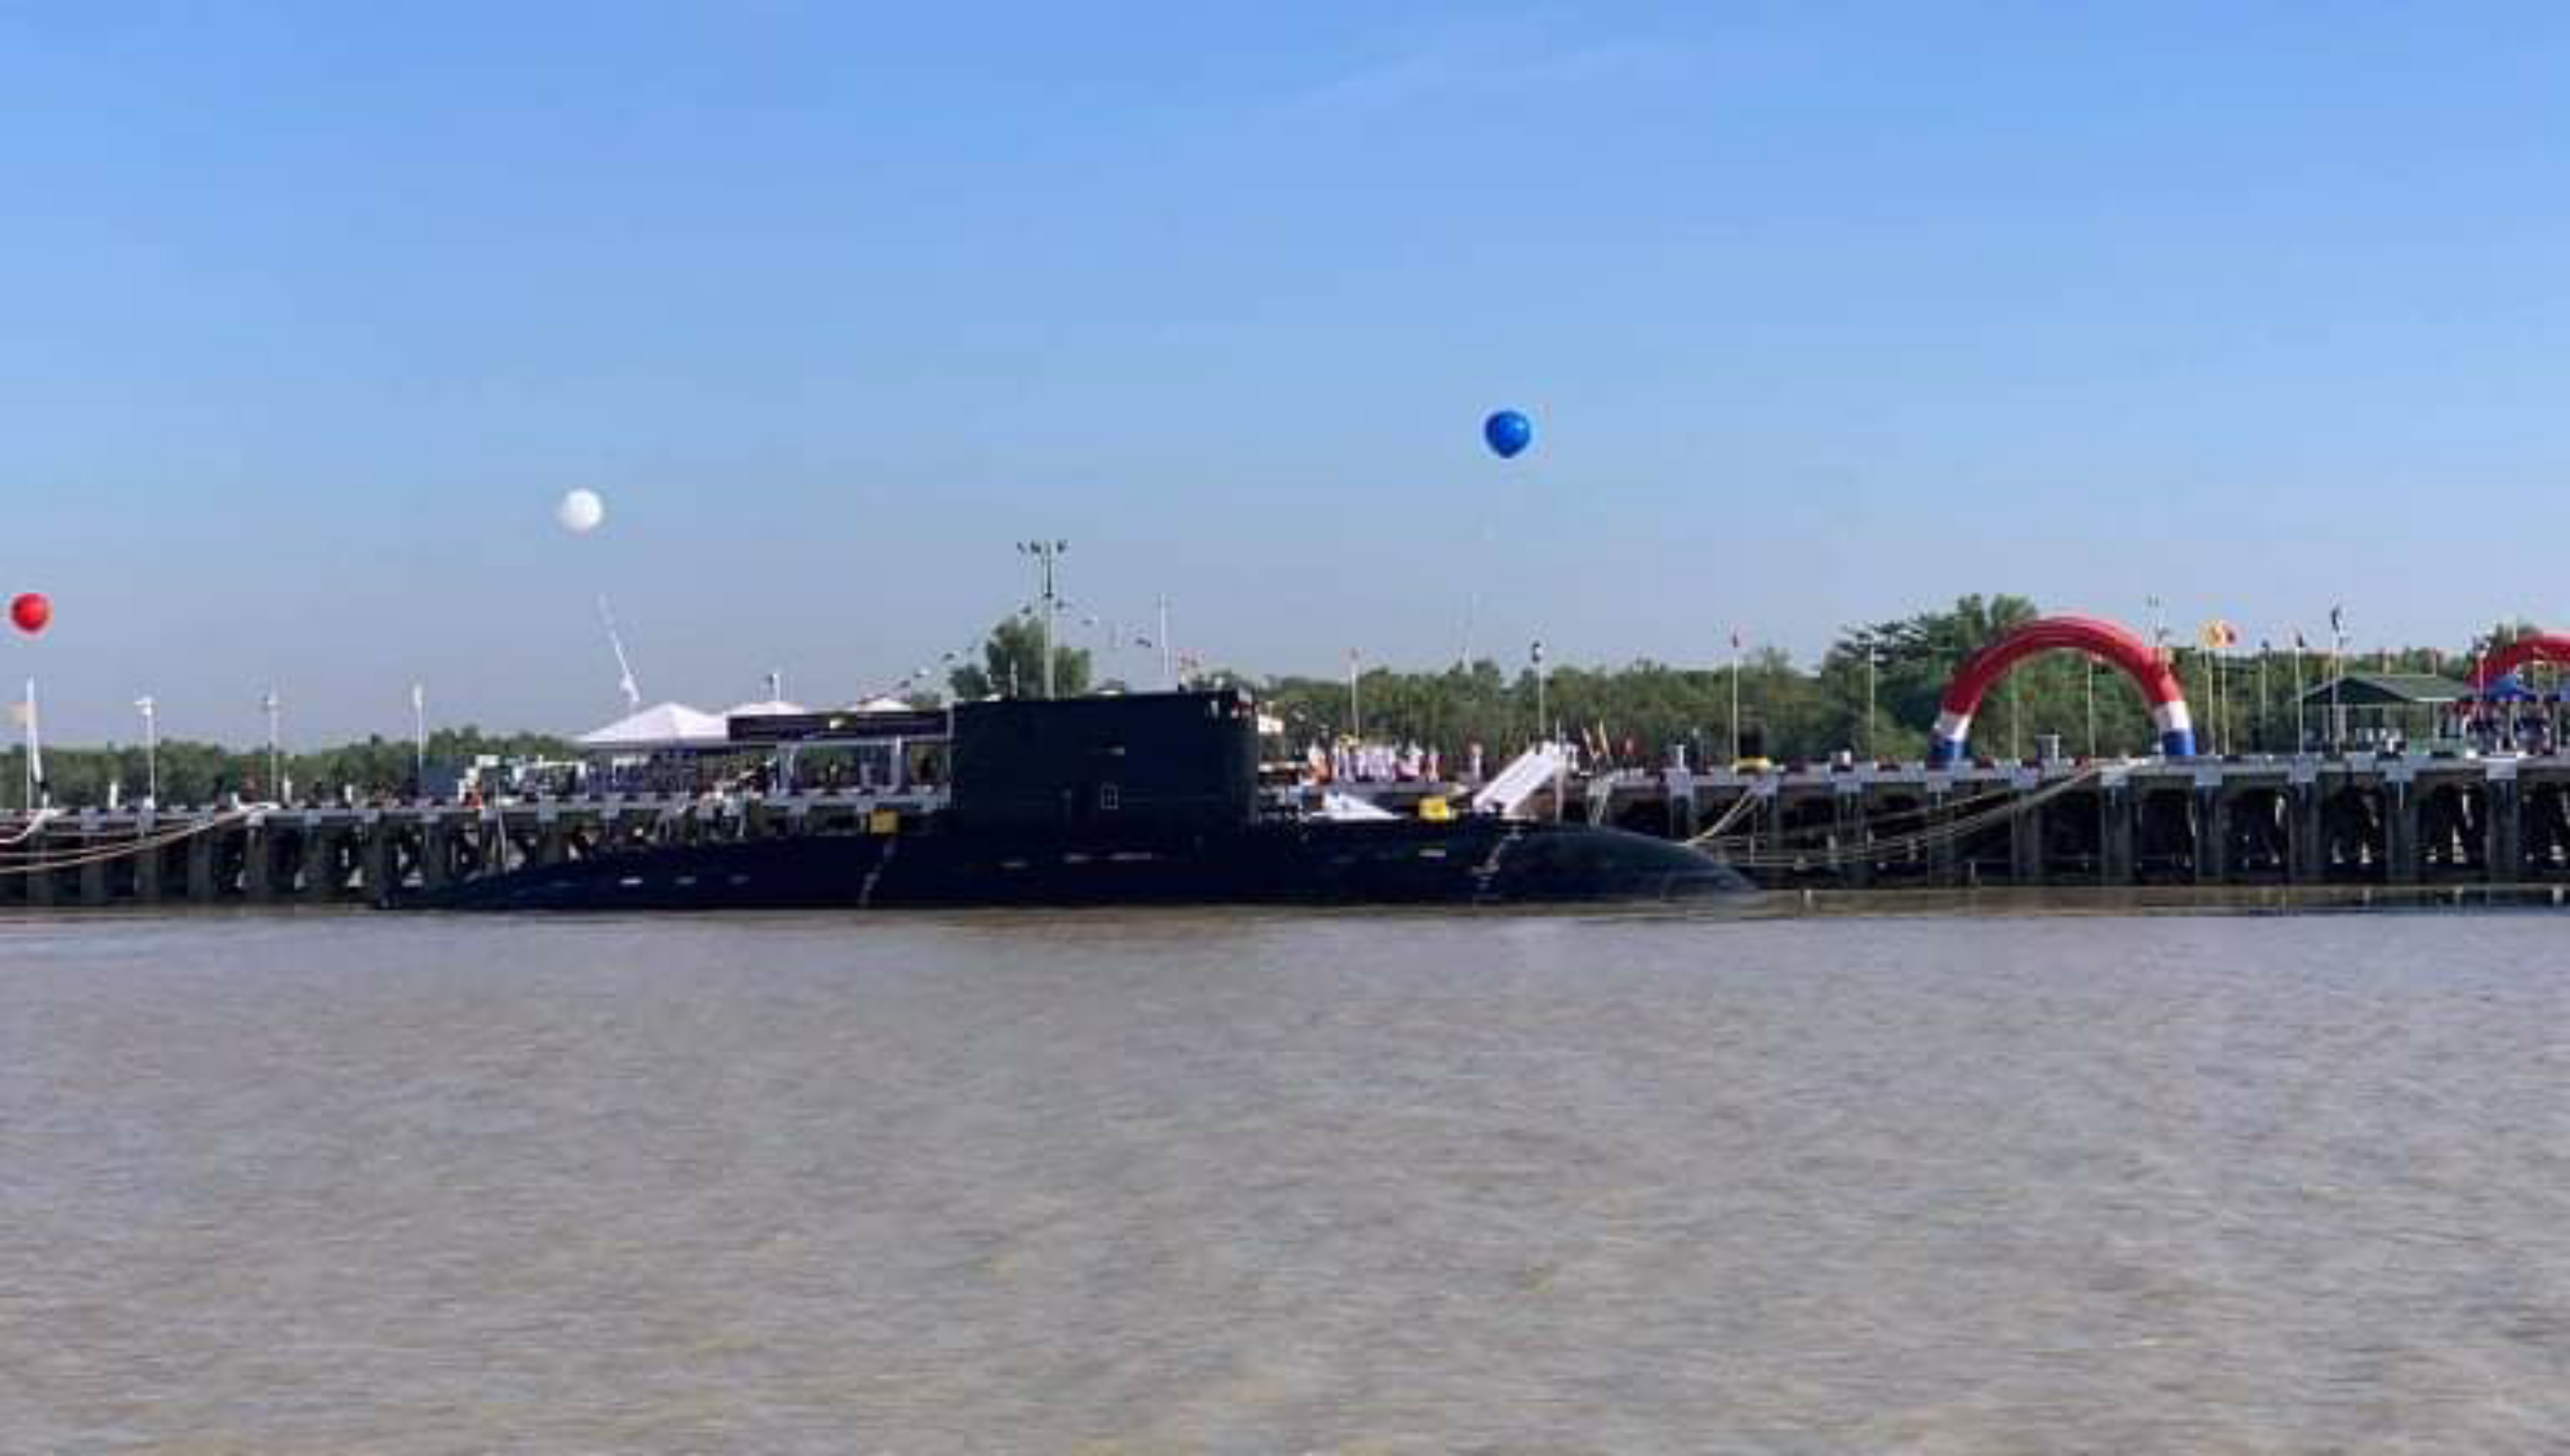 Le sous-marin birman UMS Minye Theinkhathu lors de la cérémonie de mise en service